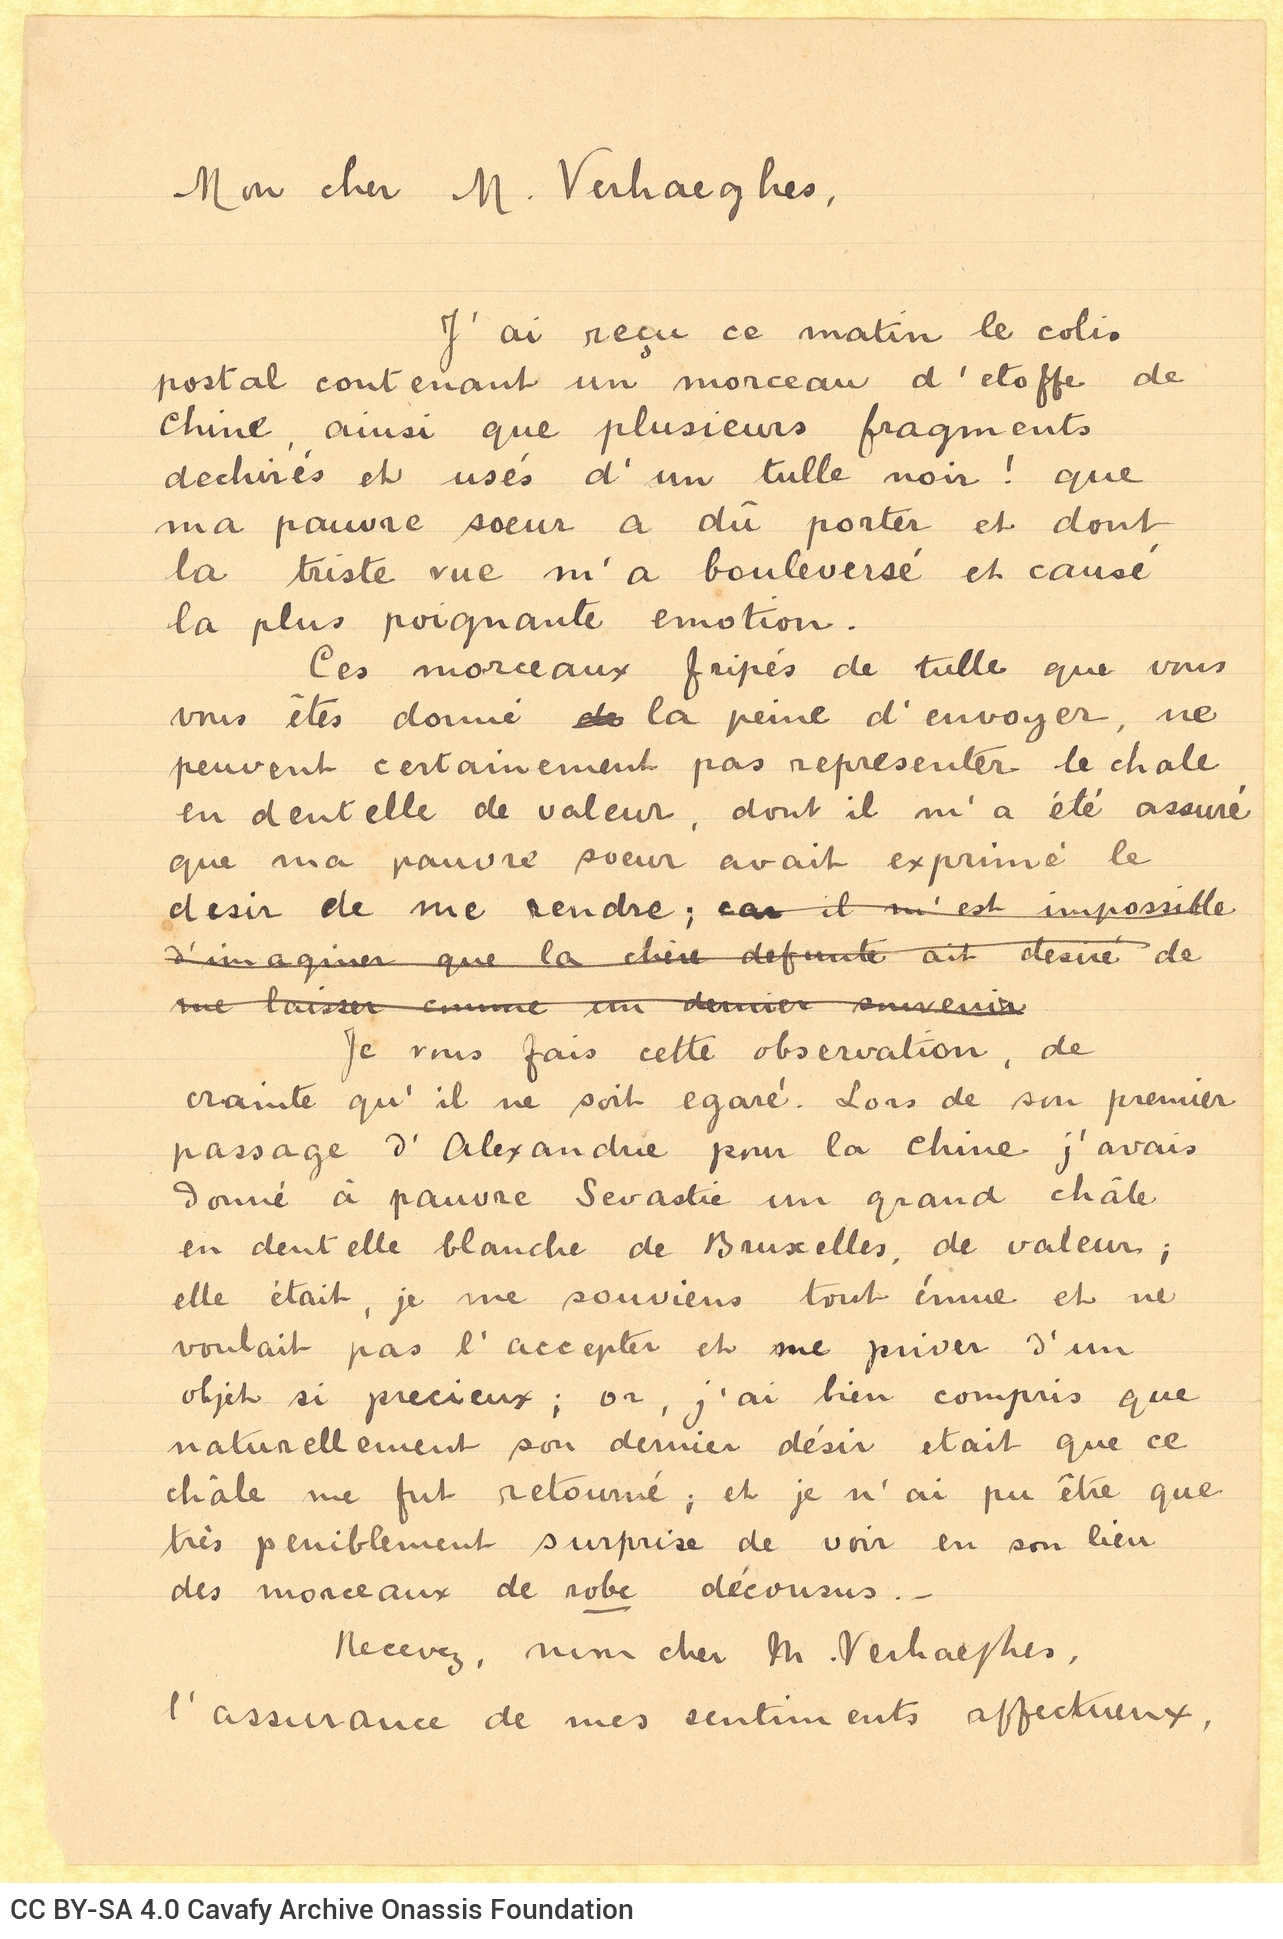 Ανυπόγραφο σχέδιο επιστολής προς τον Leon Verhaeghe de Naeyer στη μία όψη διαγρ